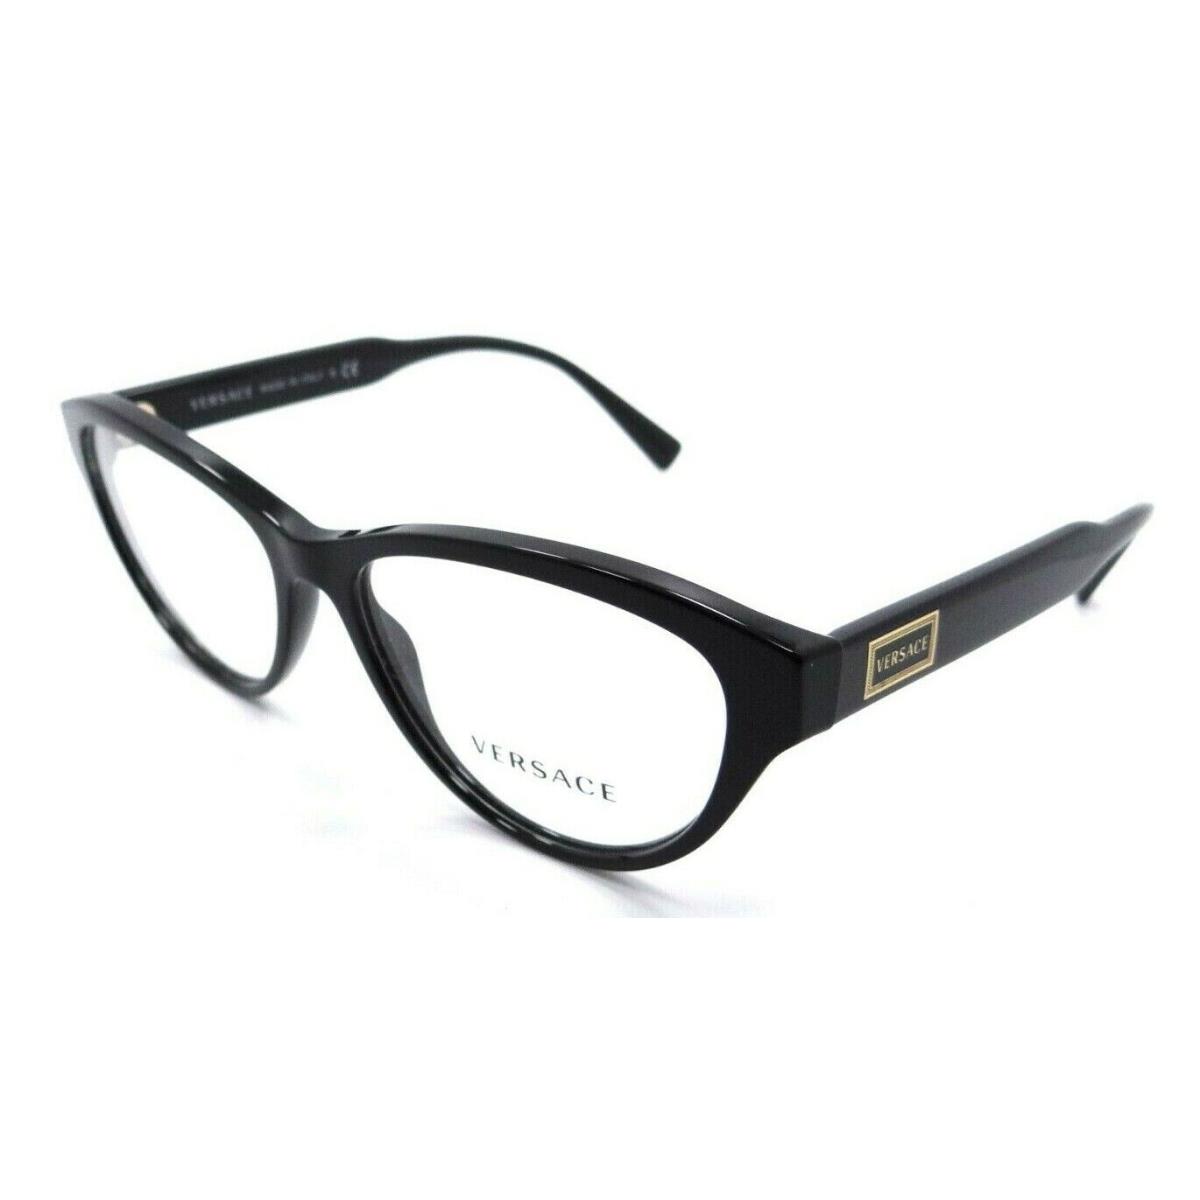 Versace Eyeglasses Frames VE 3276 GB1 54-15-140 Black Made in Italy